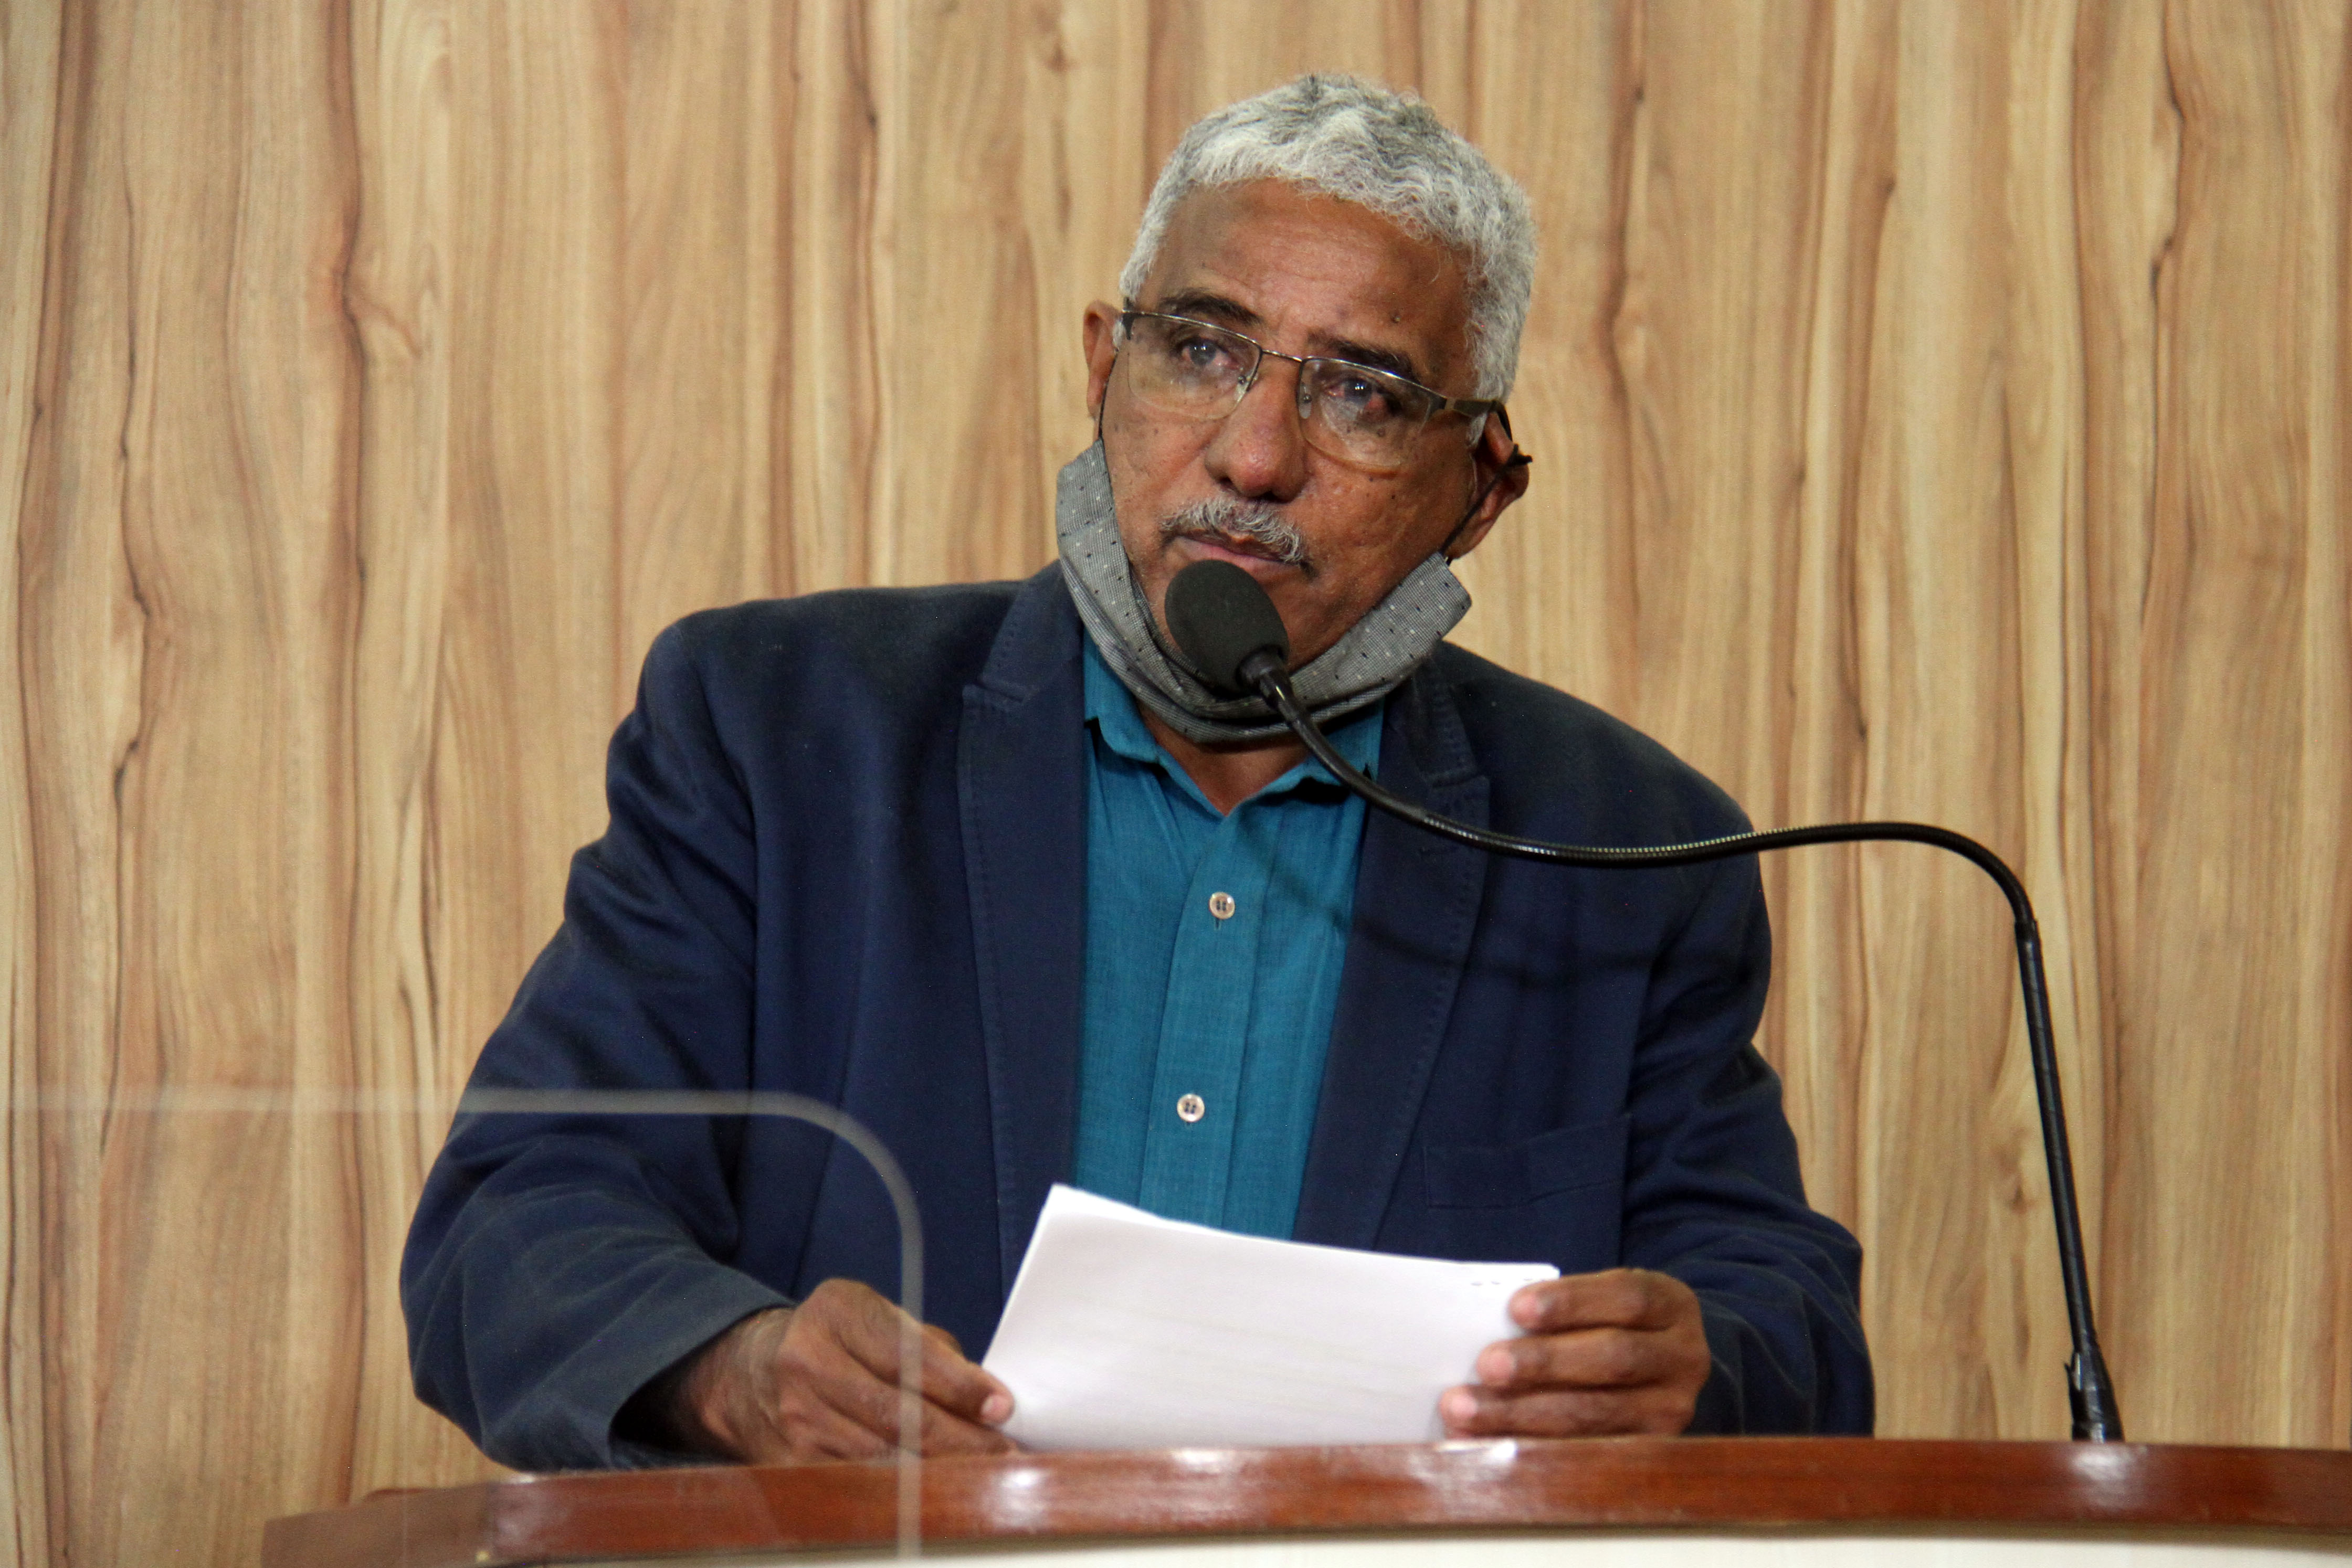 #PraCegoVer: Foto mostra o vereador Tunico discursando na tribuna da Câmara.